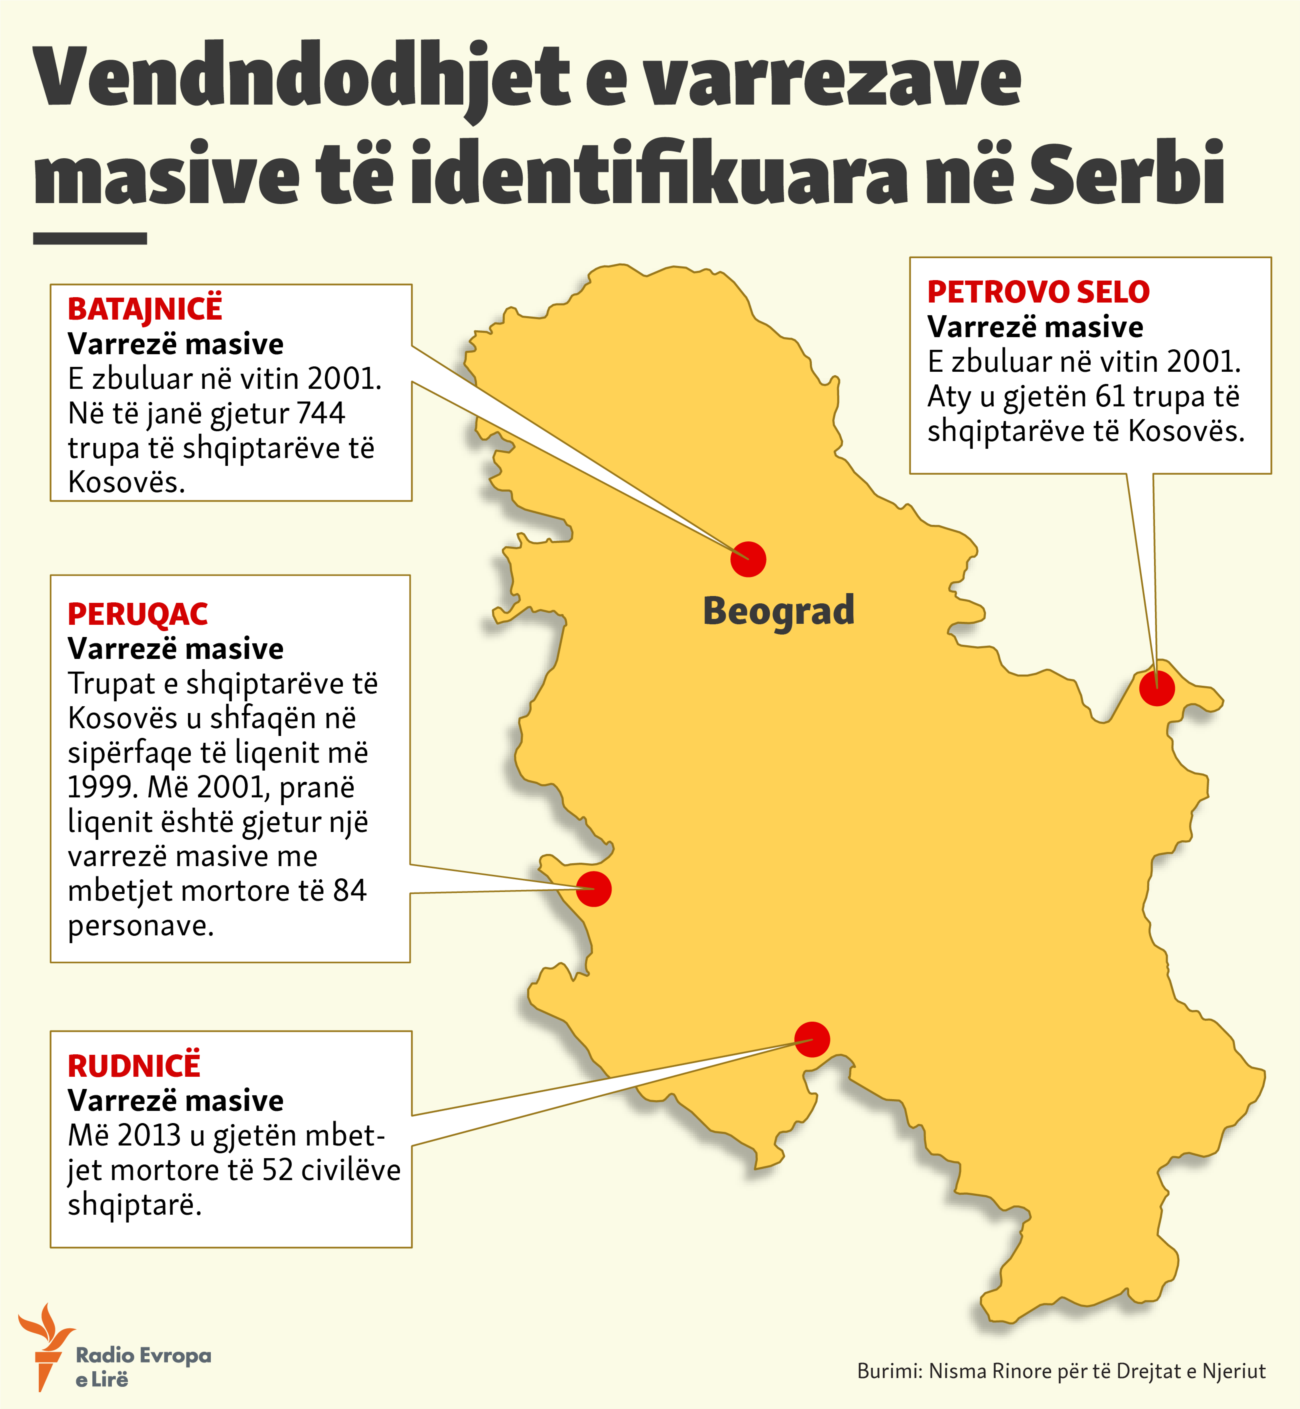 Kosovo: Info graphic - Massive graves identified in Serbia